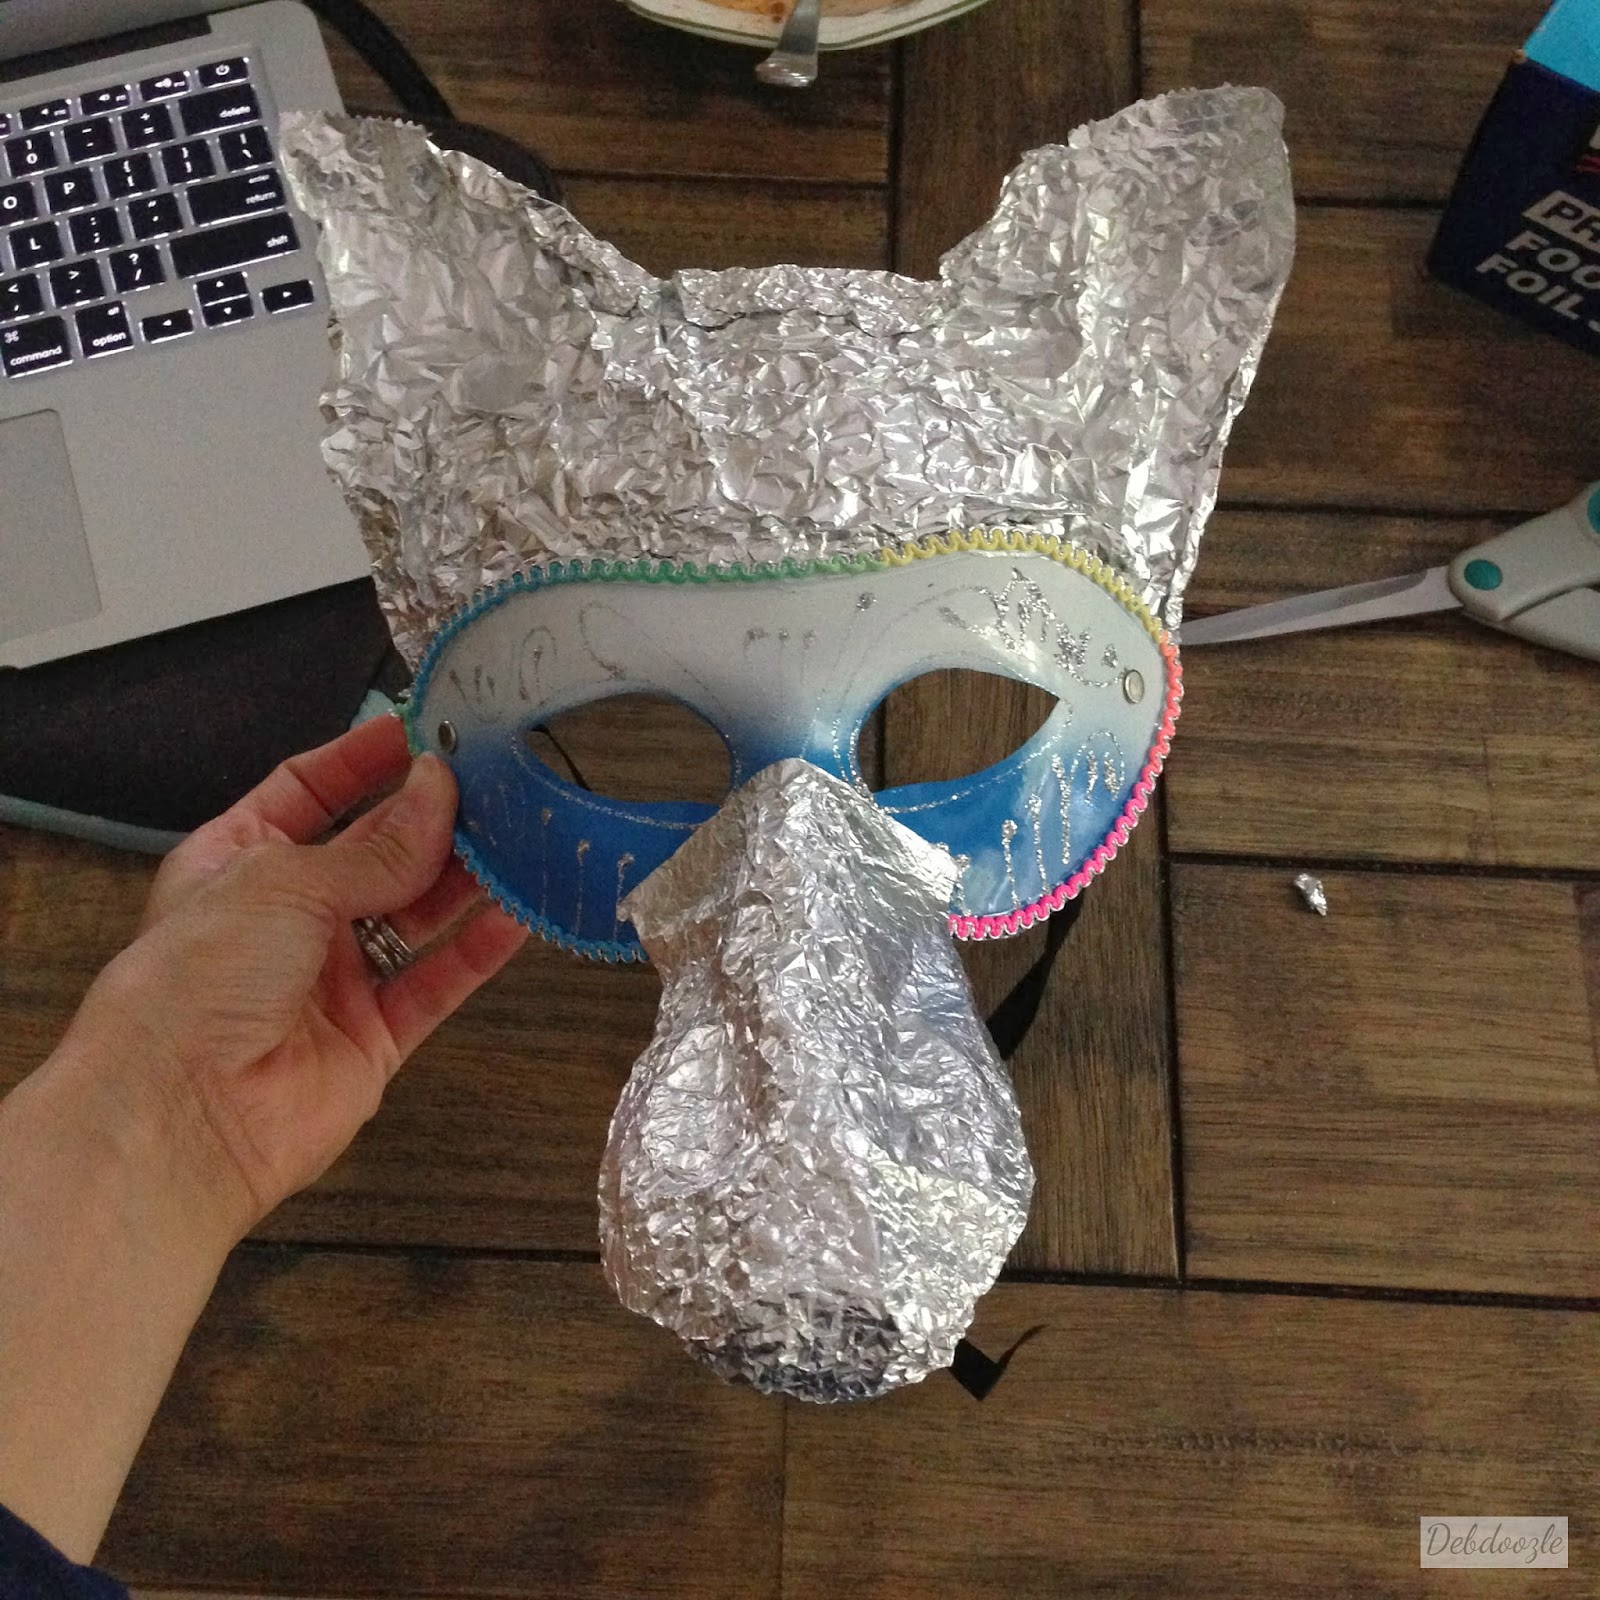 Best ideas about DIY Paper Mache Masks
. Save or Pin Debdoozle DIY Papier Mâché Paper Mache Anubis Jackal Mask Now.